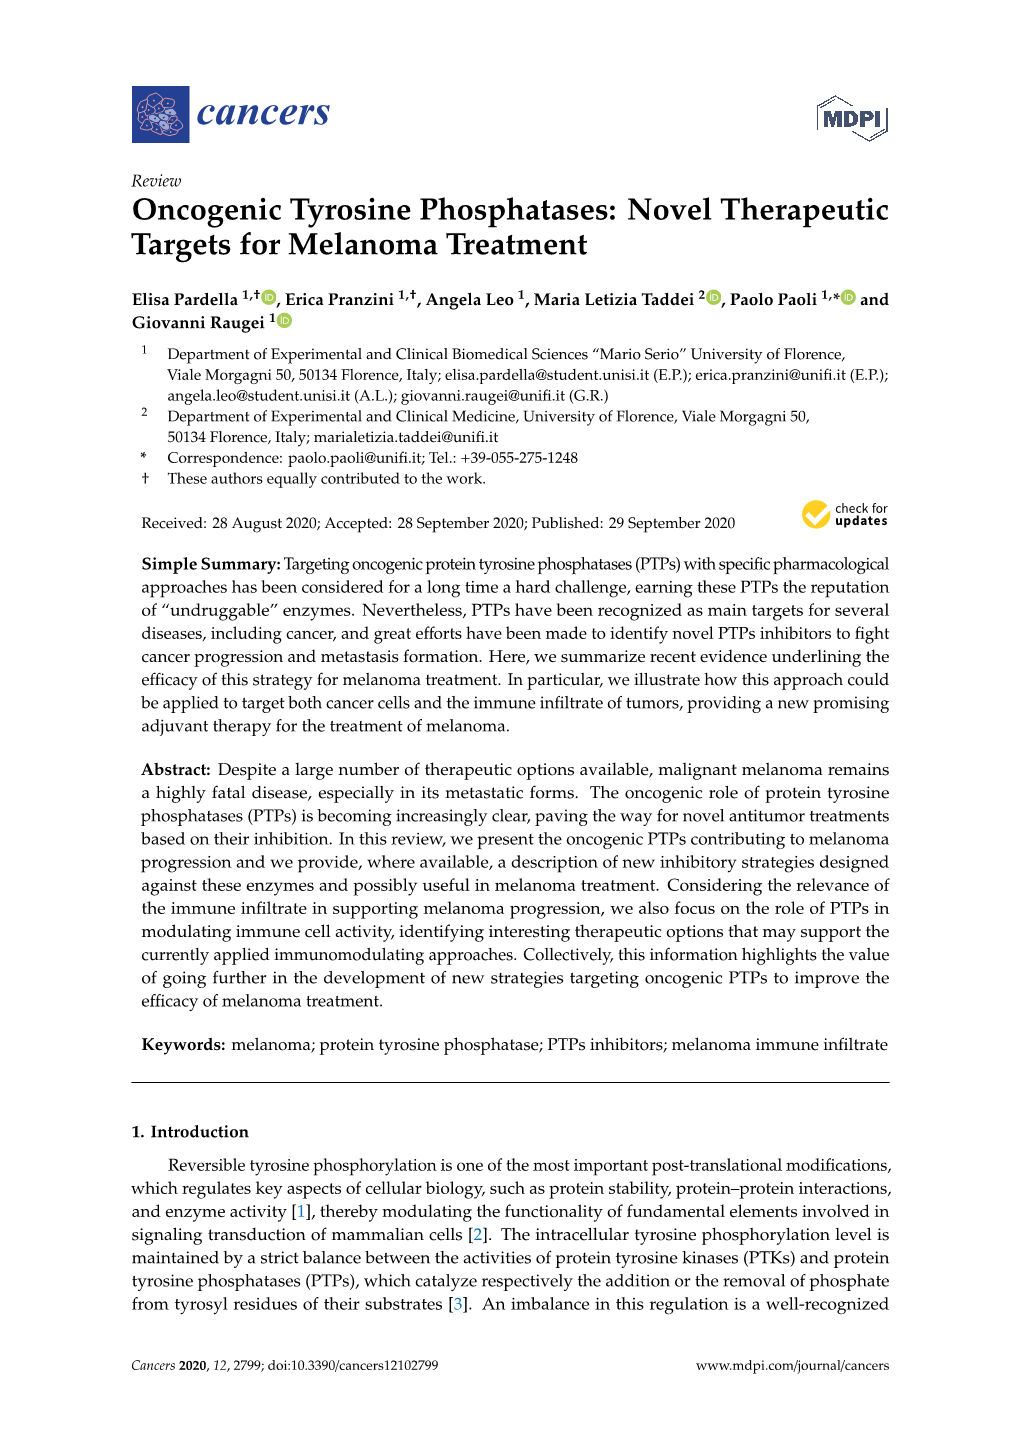 Oncogenic Tyrosine Phosphatases: Novel Therapeutic Targets for Melanoma Treatment